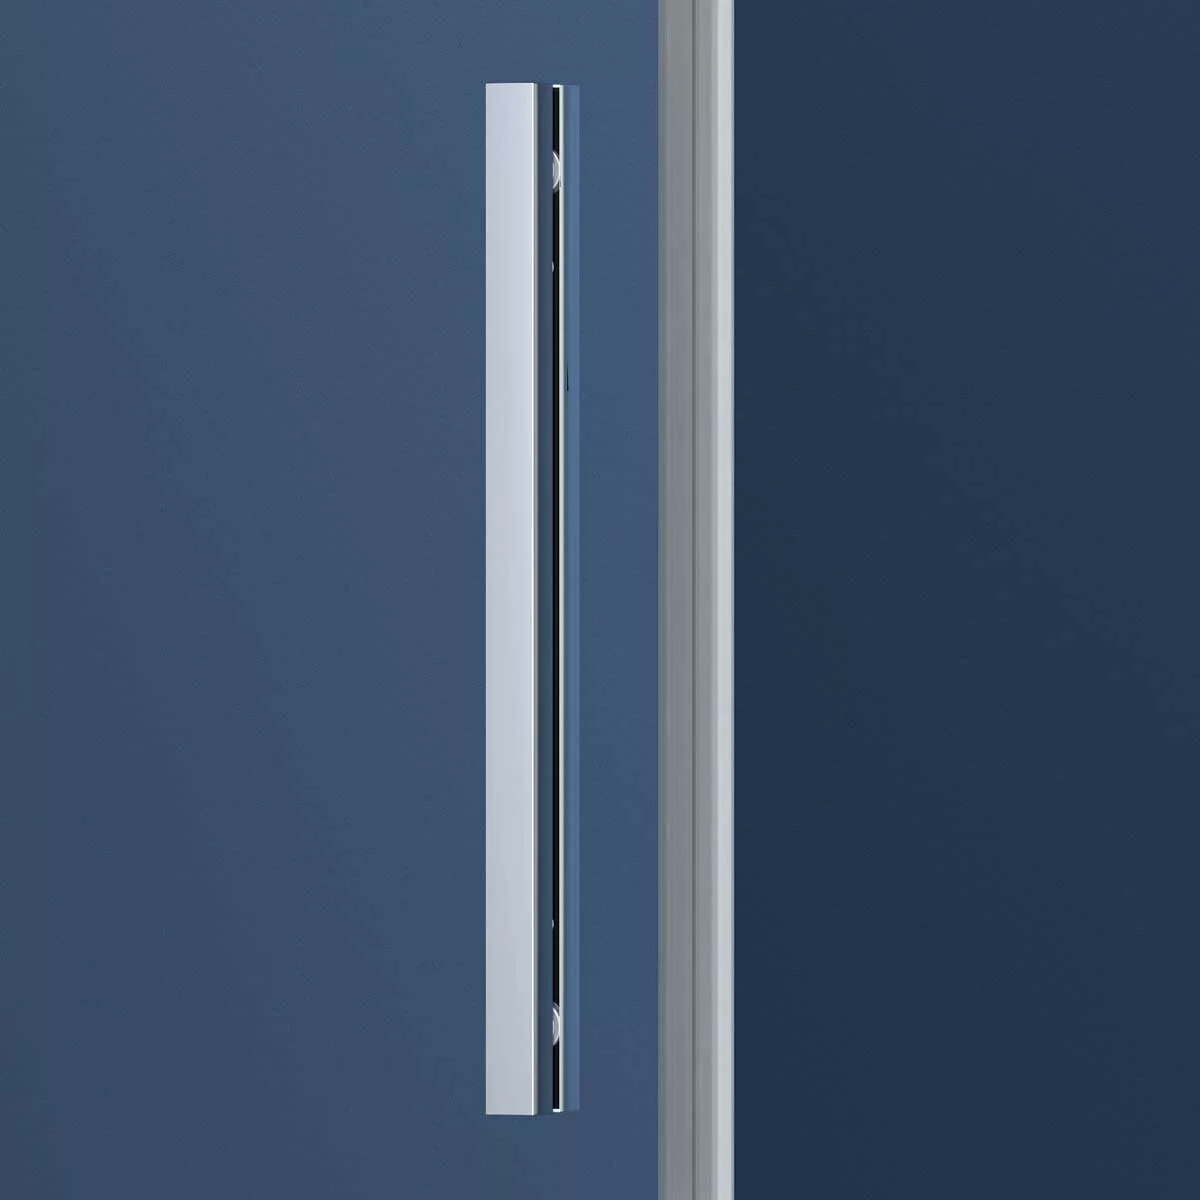 фото Душевая дверь Vincea Soft VDS-3SO120CL, профиль хром, стекло прозрачное 